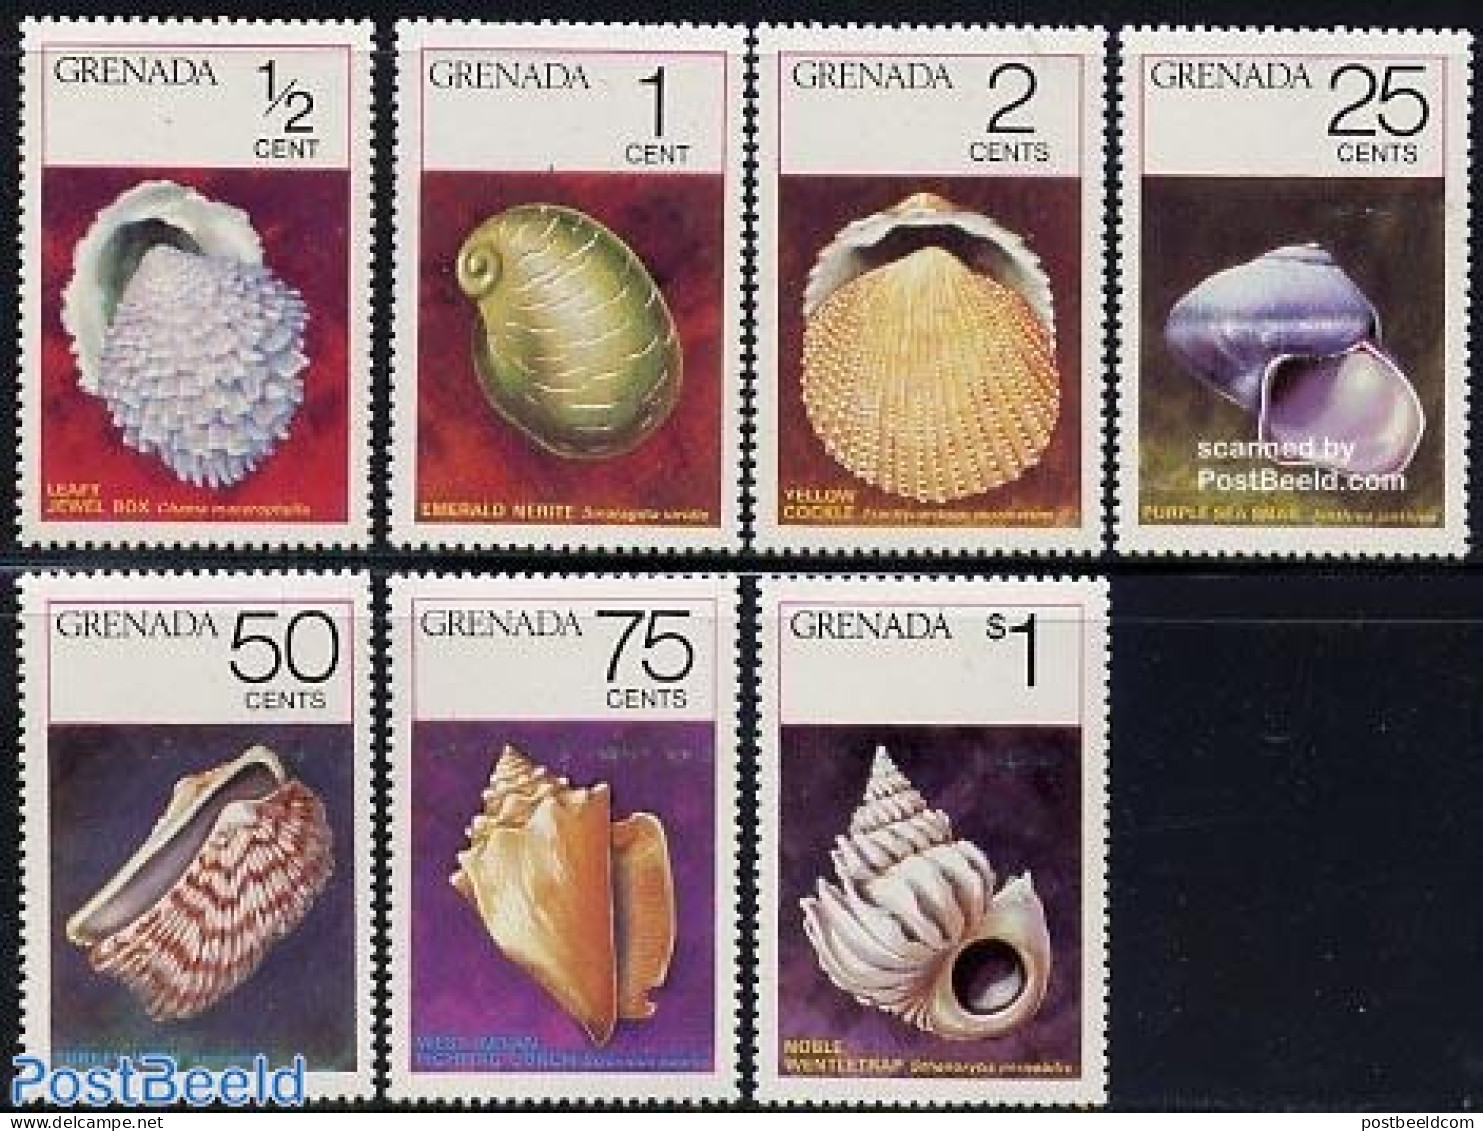 Grenada 1975 Shells 7v, Mint NH, Nature - Shells & Crustaceans - Vita Acquatica